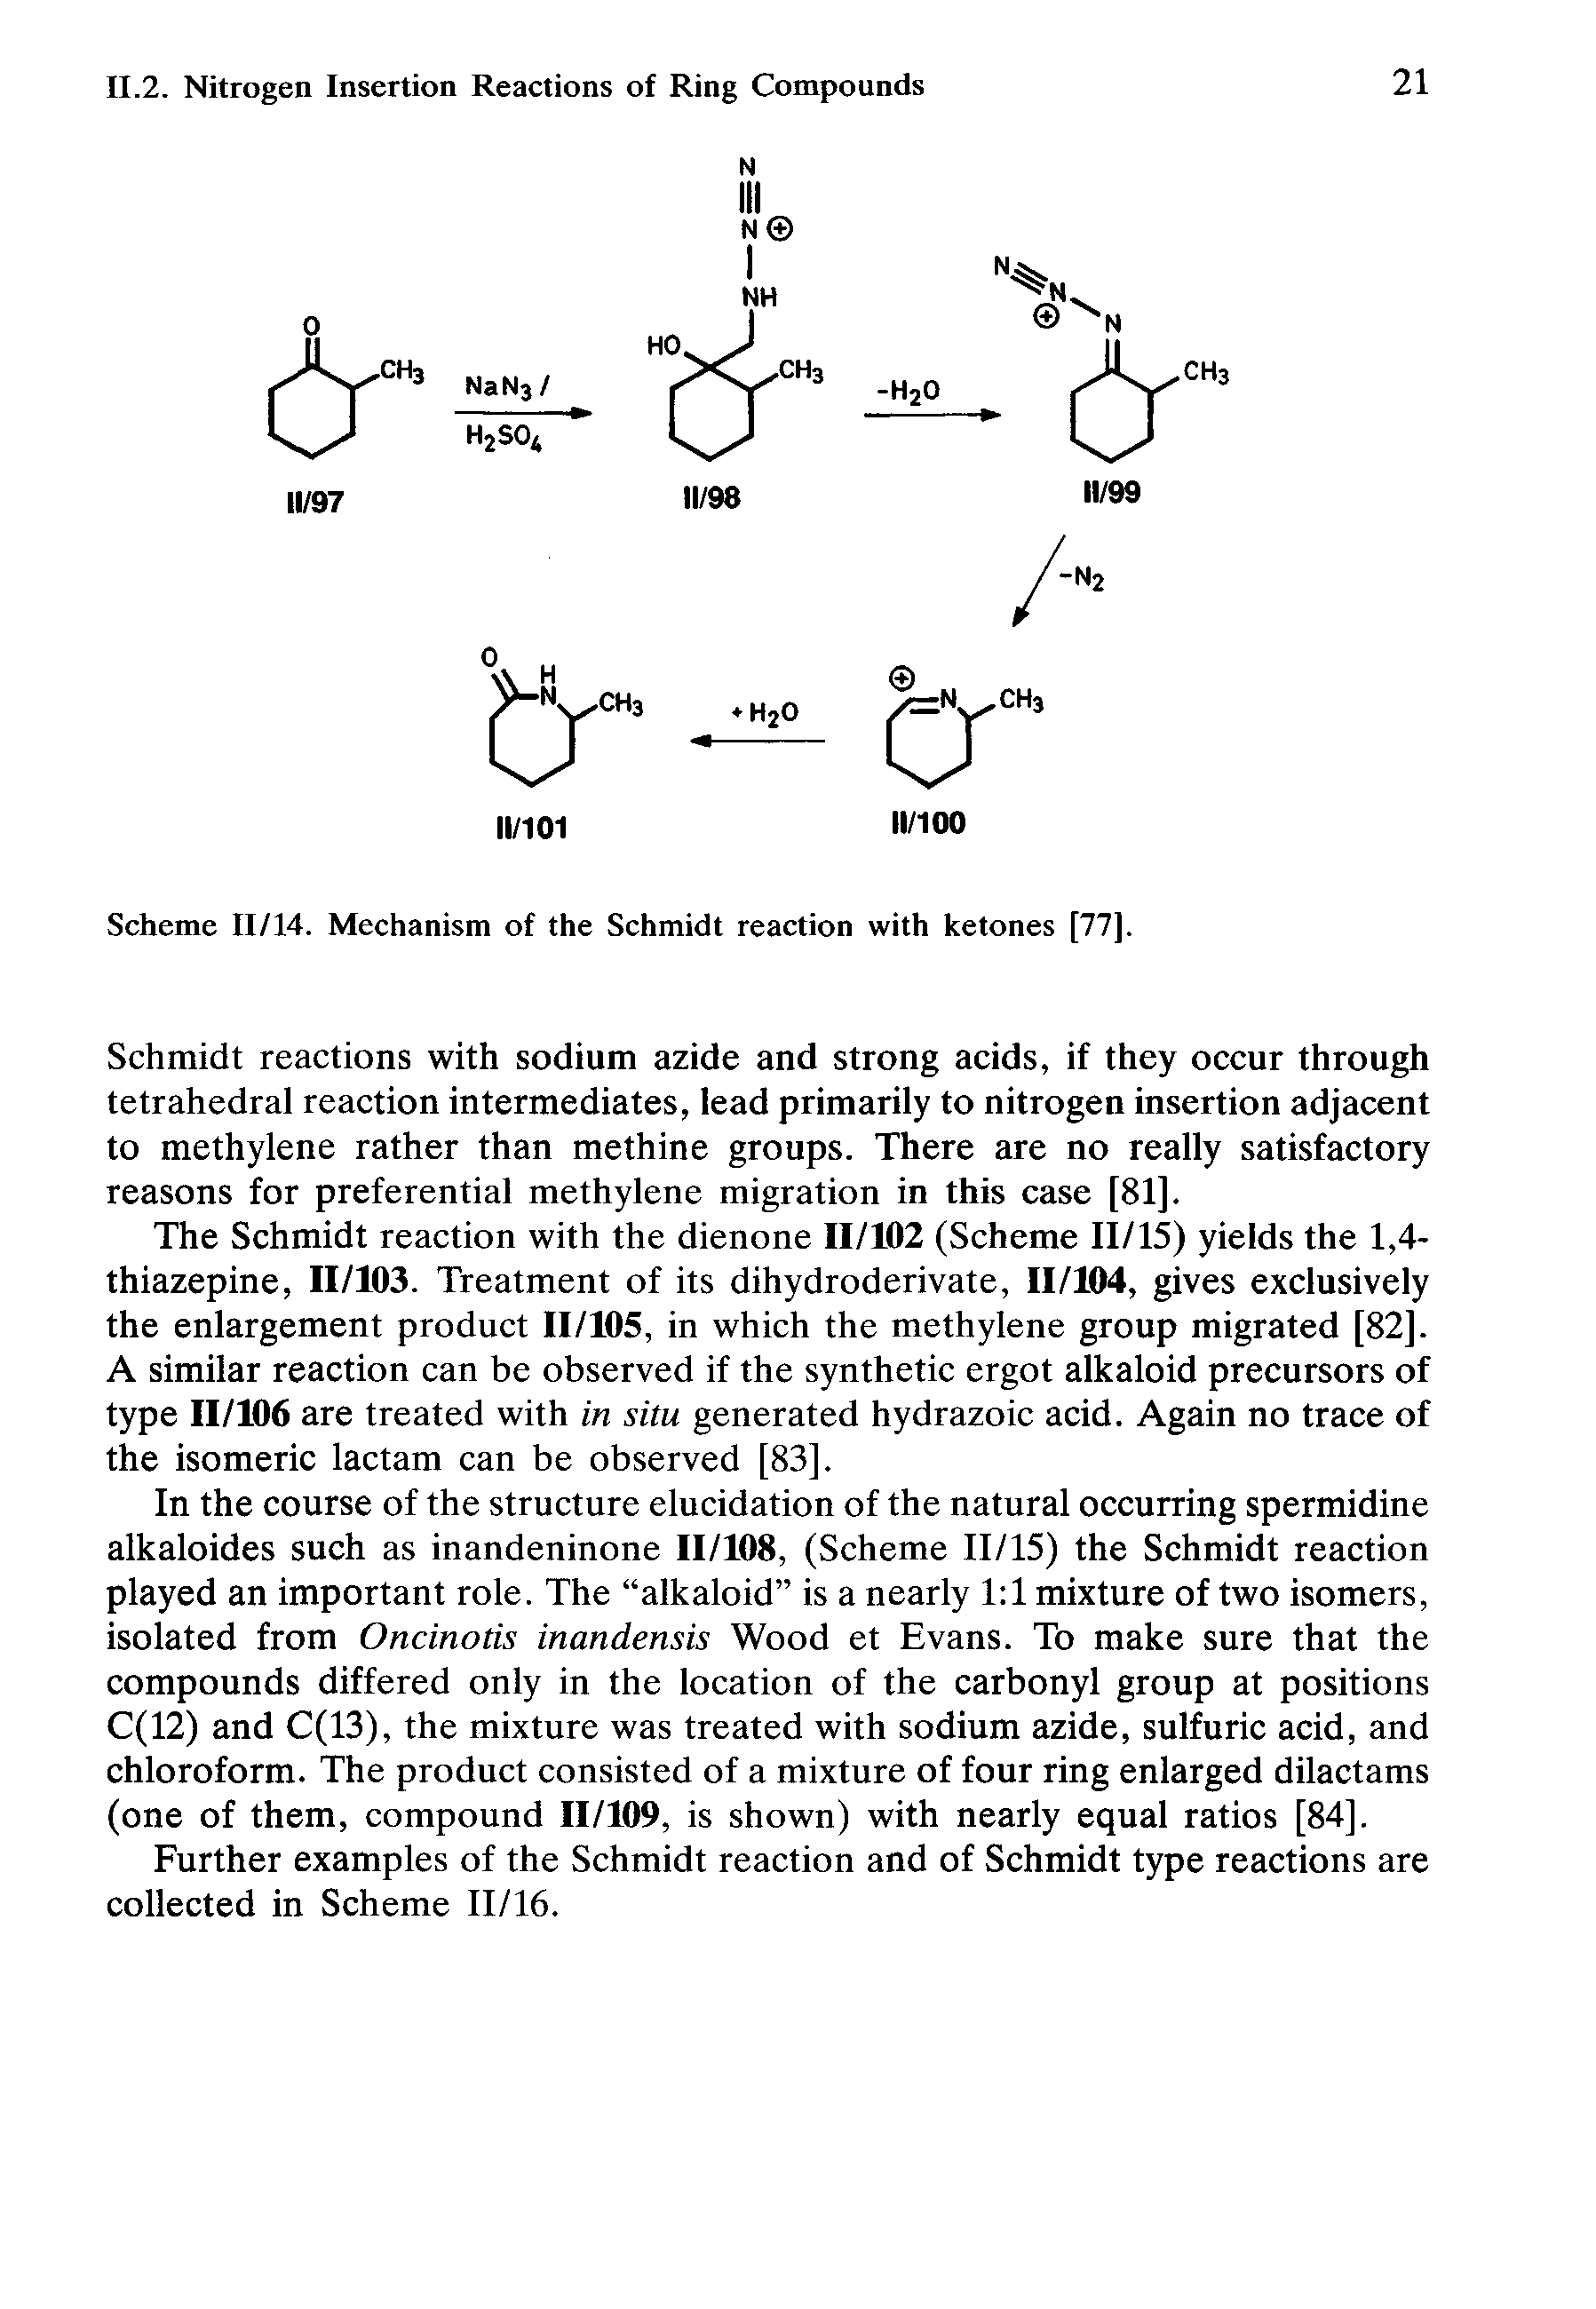 Scheme 11/14. Mechanism of the Schmidt reaction with ketones [77].